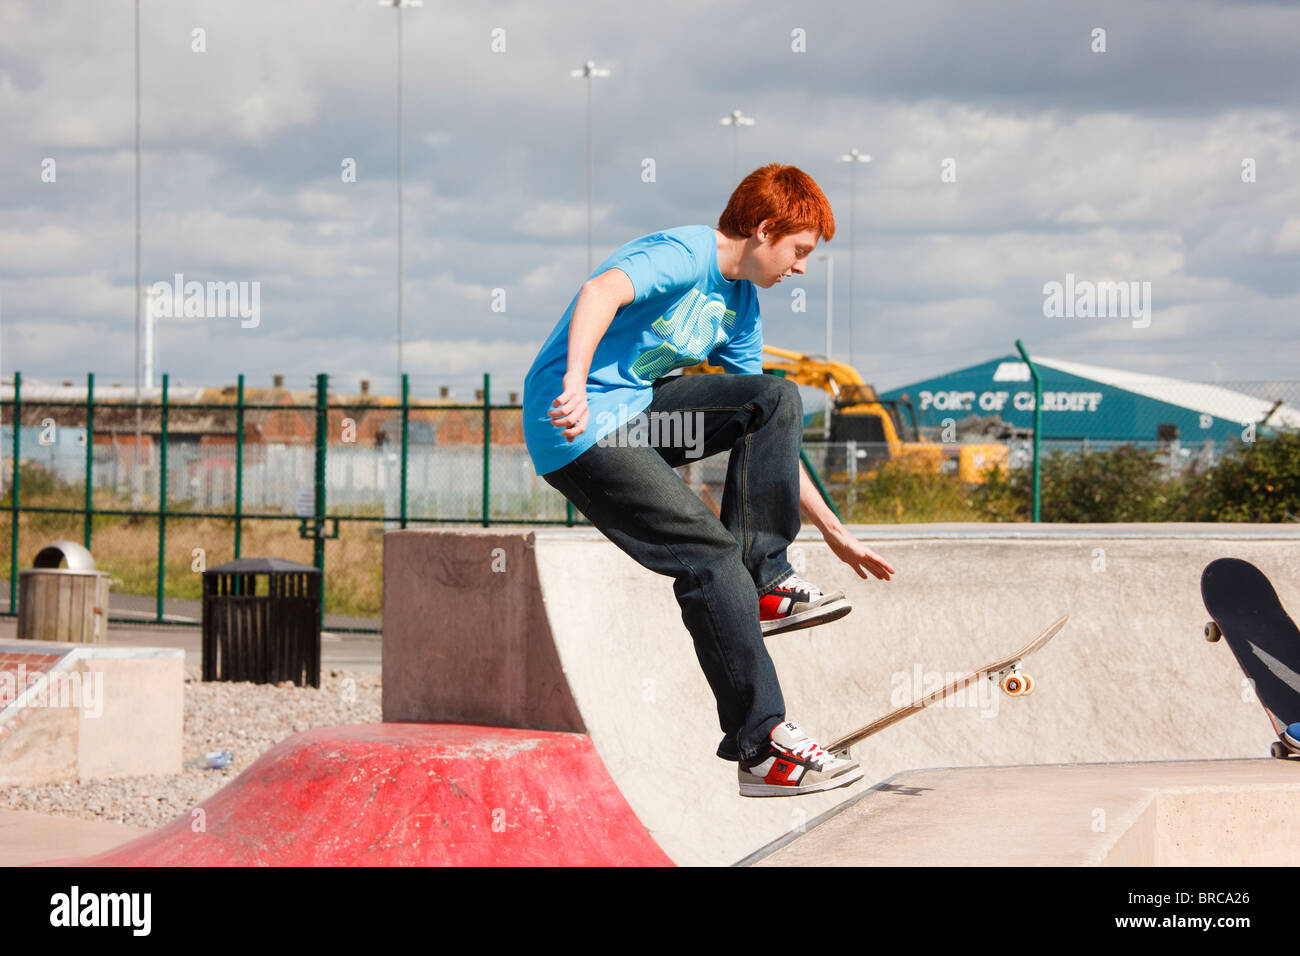 Teenage boy skateboarding en Skate Plaza nouveau planchodrome. Barrage de Cardiff Bay Park, Cardiff, Glamorgan, Pays de Galles, Royaume-Uni Banque D'Images